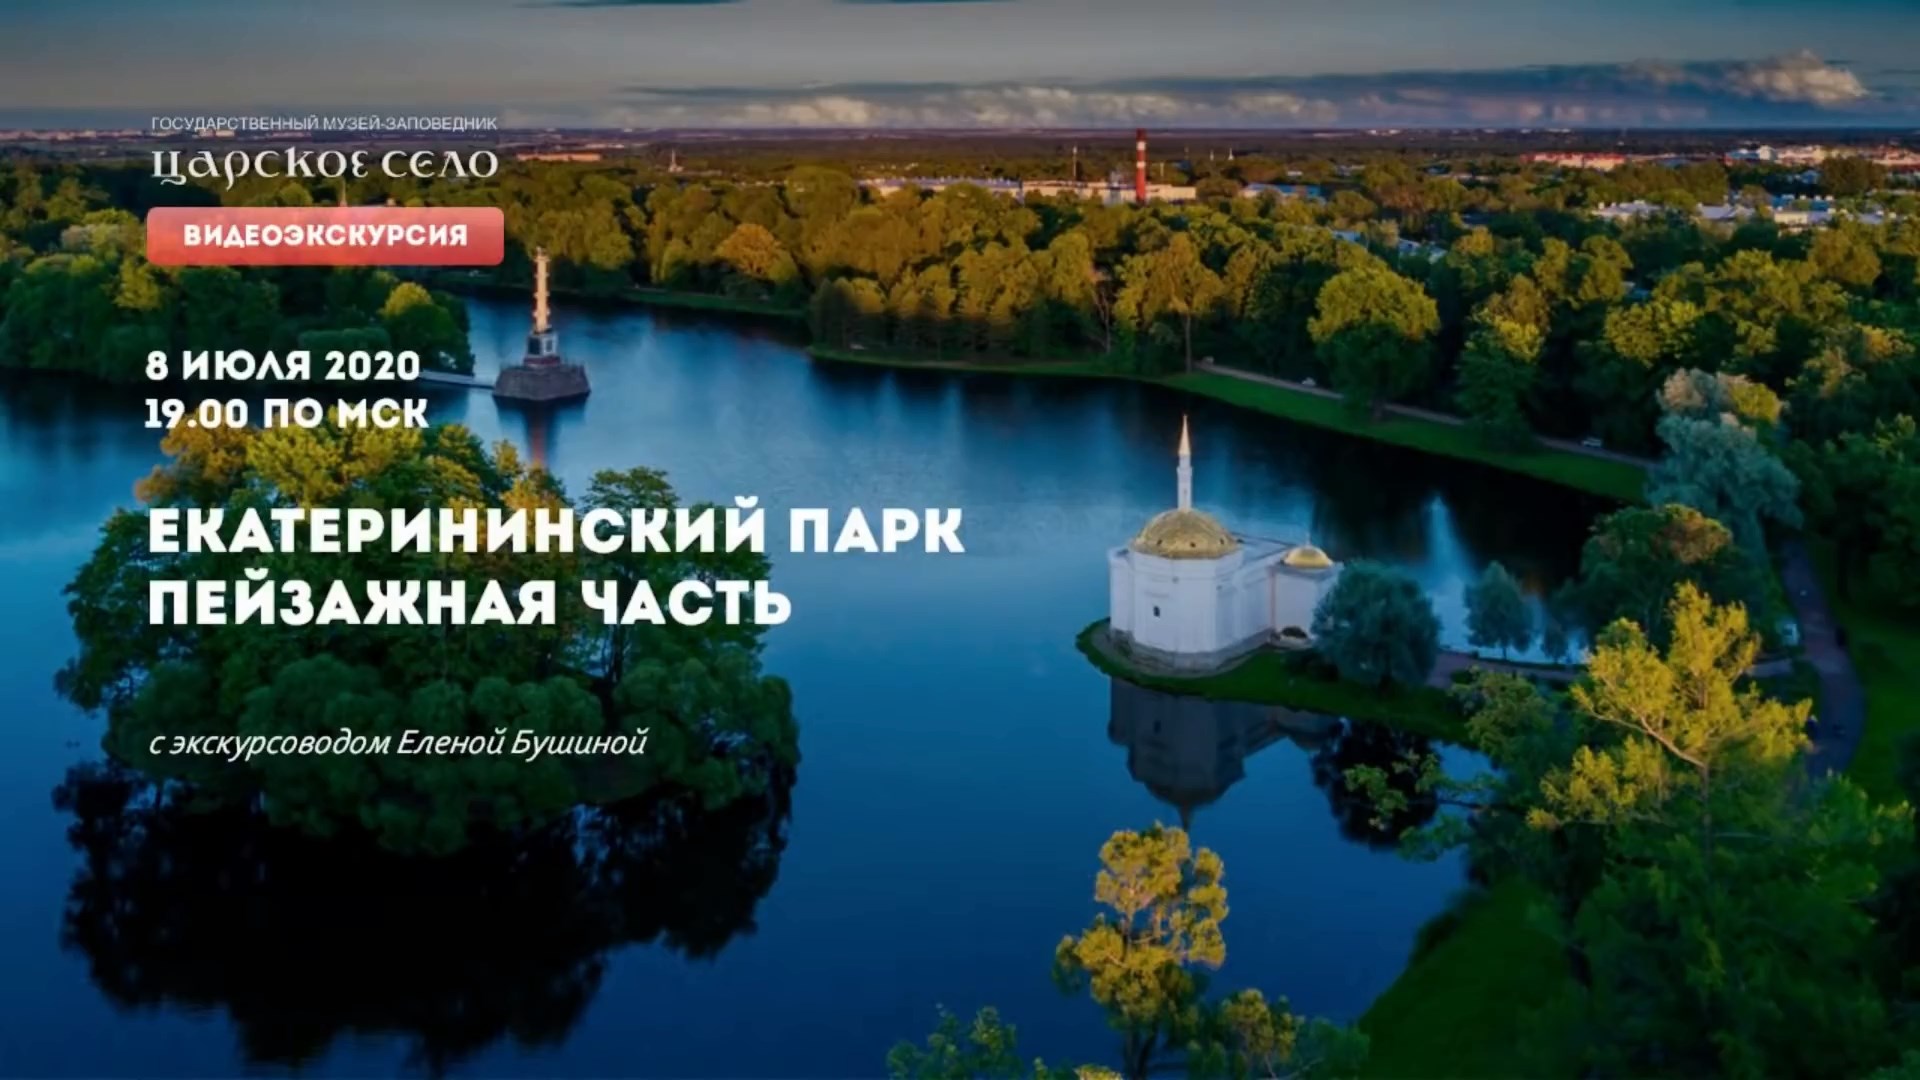 Екатерининский парк. Часть 2: Пейзажная часть | Онлайн-экскурсия (8 июля 2020)